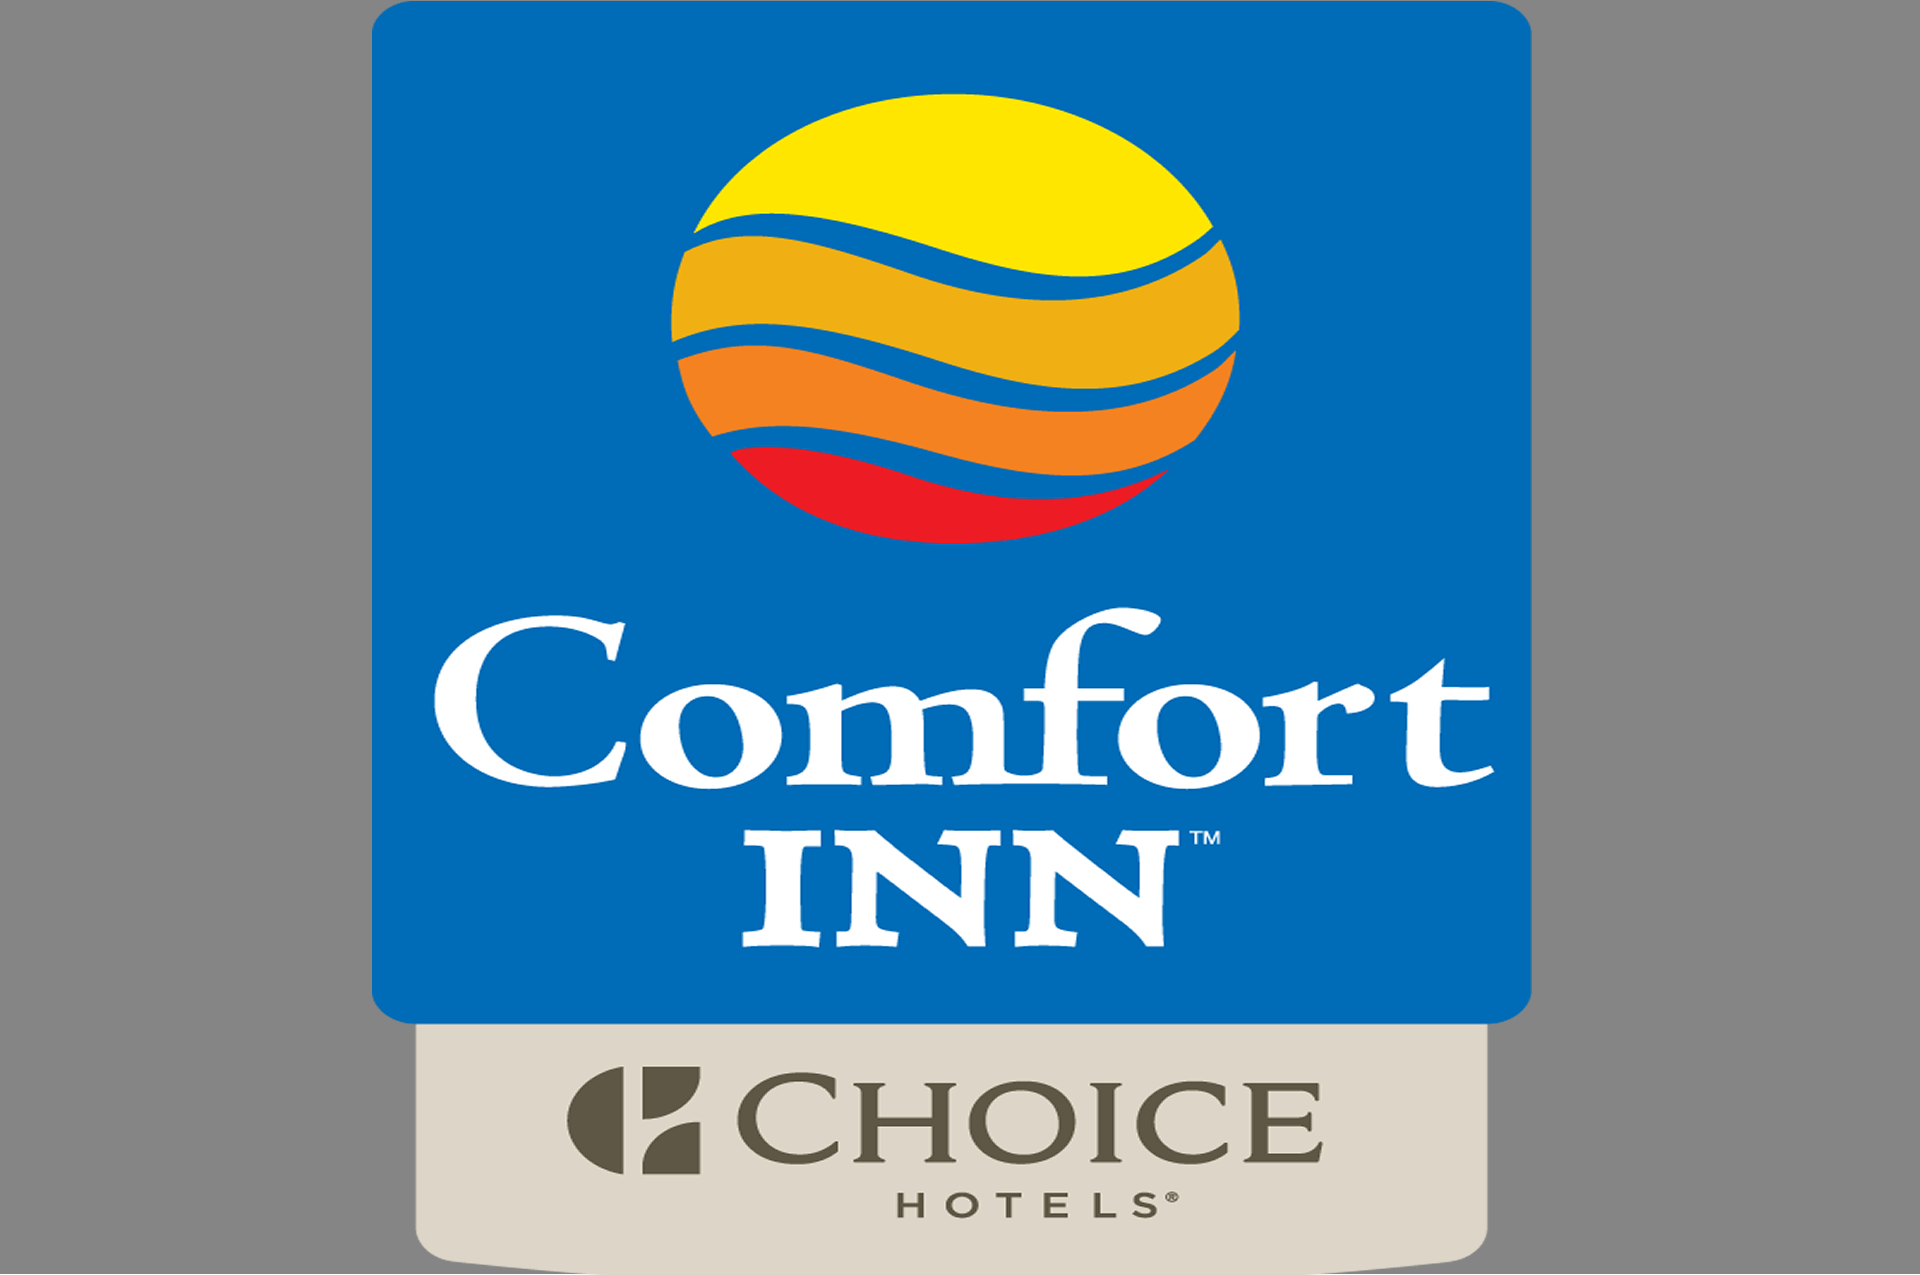 Comfort Inn Hotel For Sale